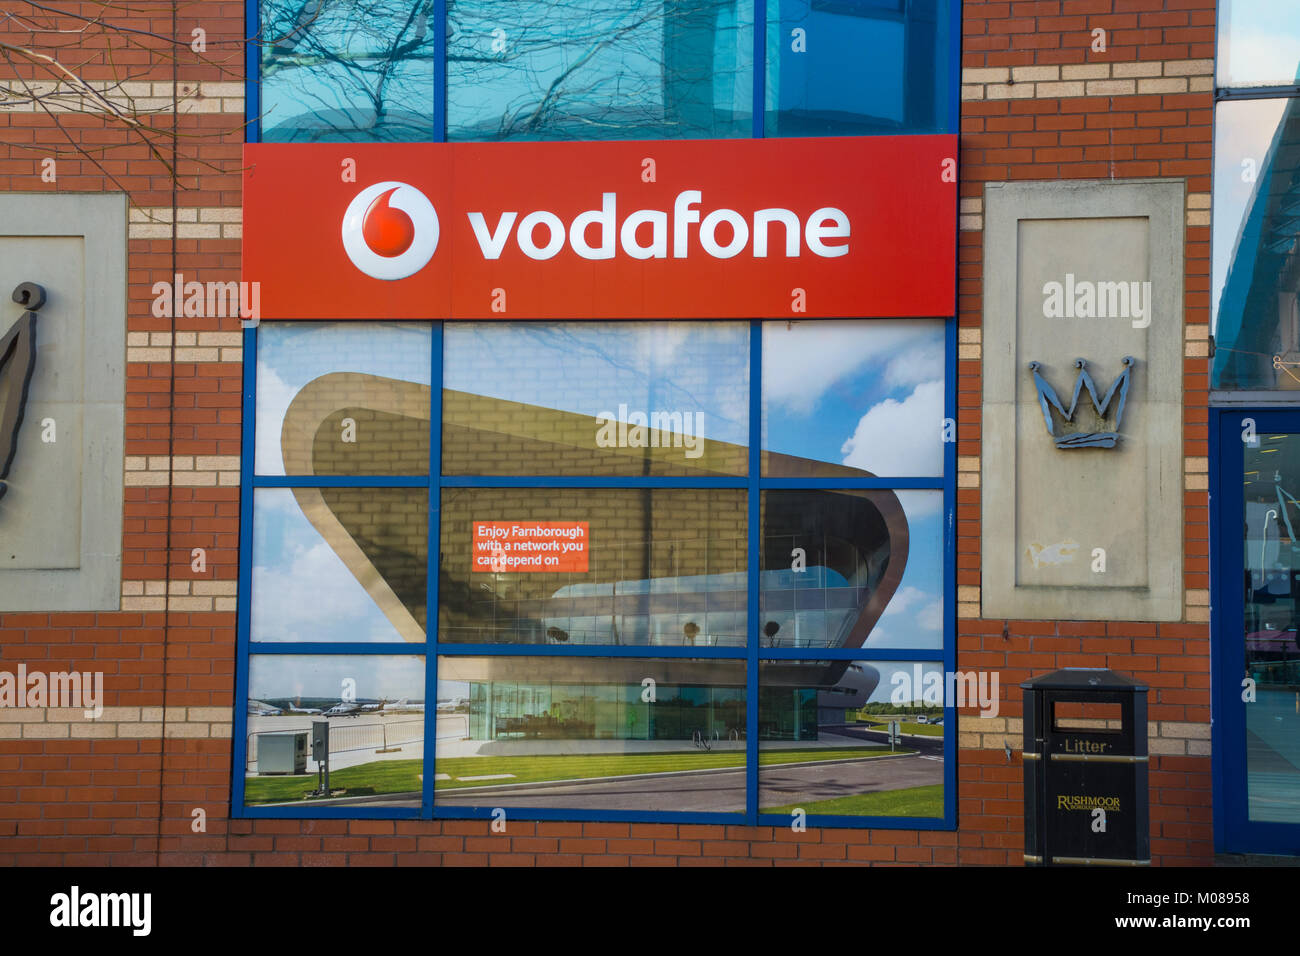 Vodafone logo or sign on shop window, UK Stock Photo